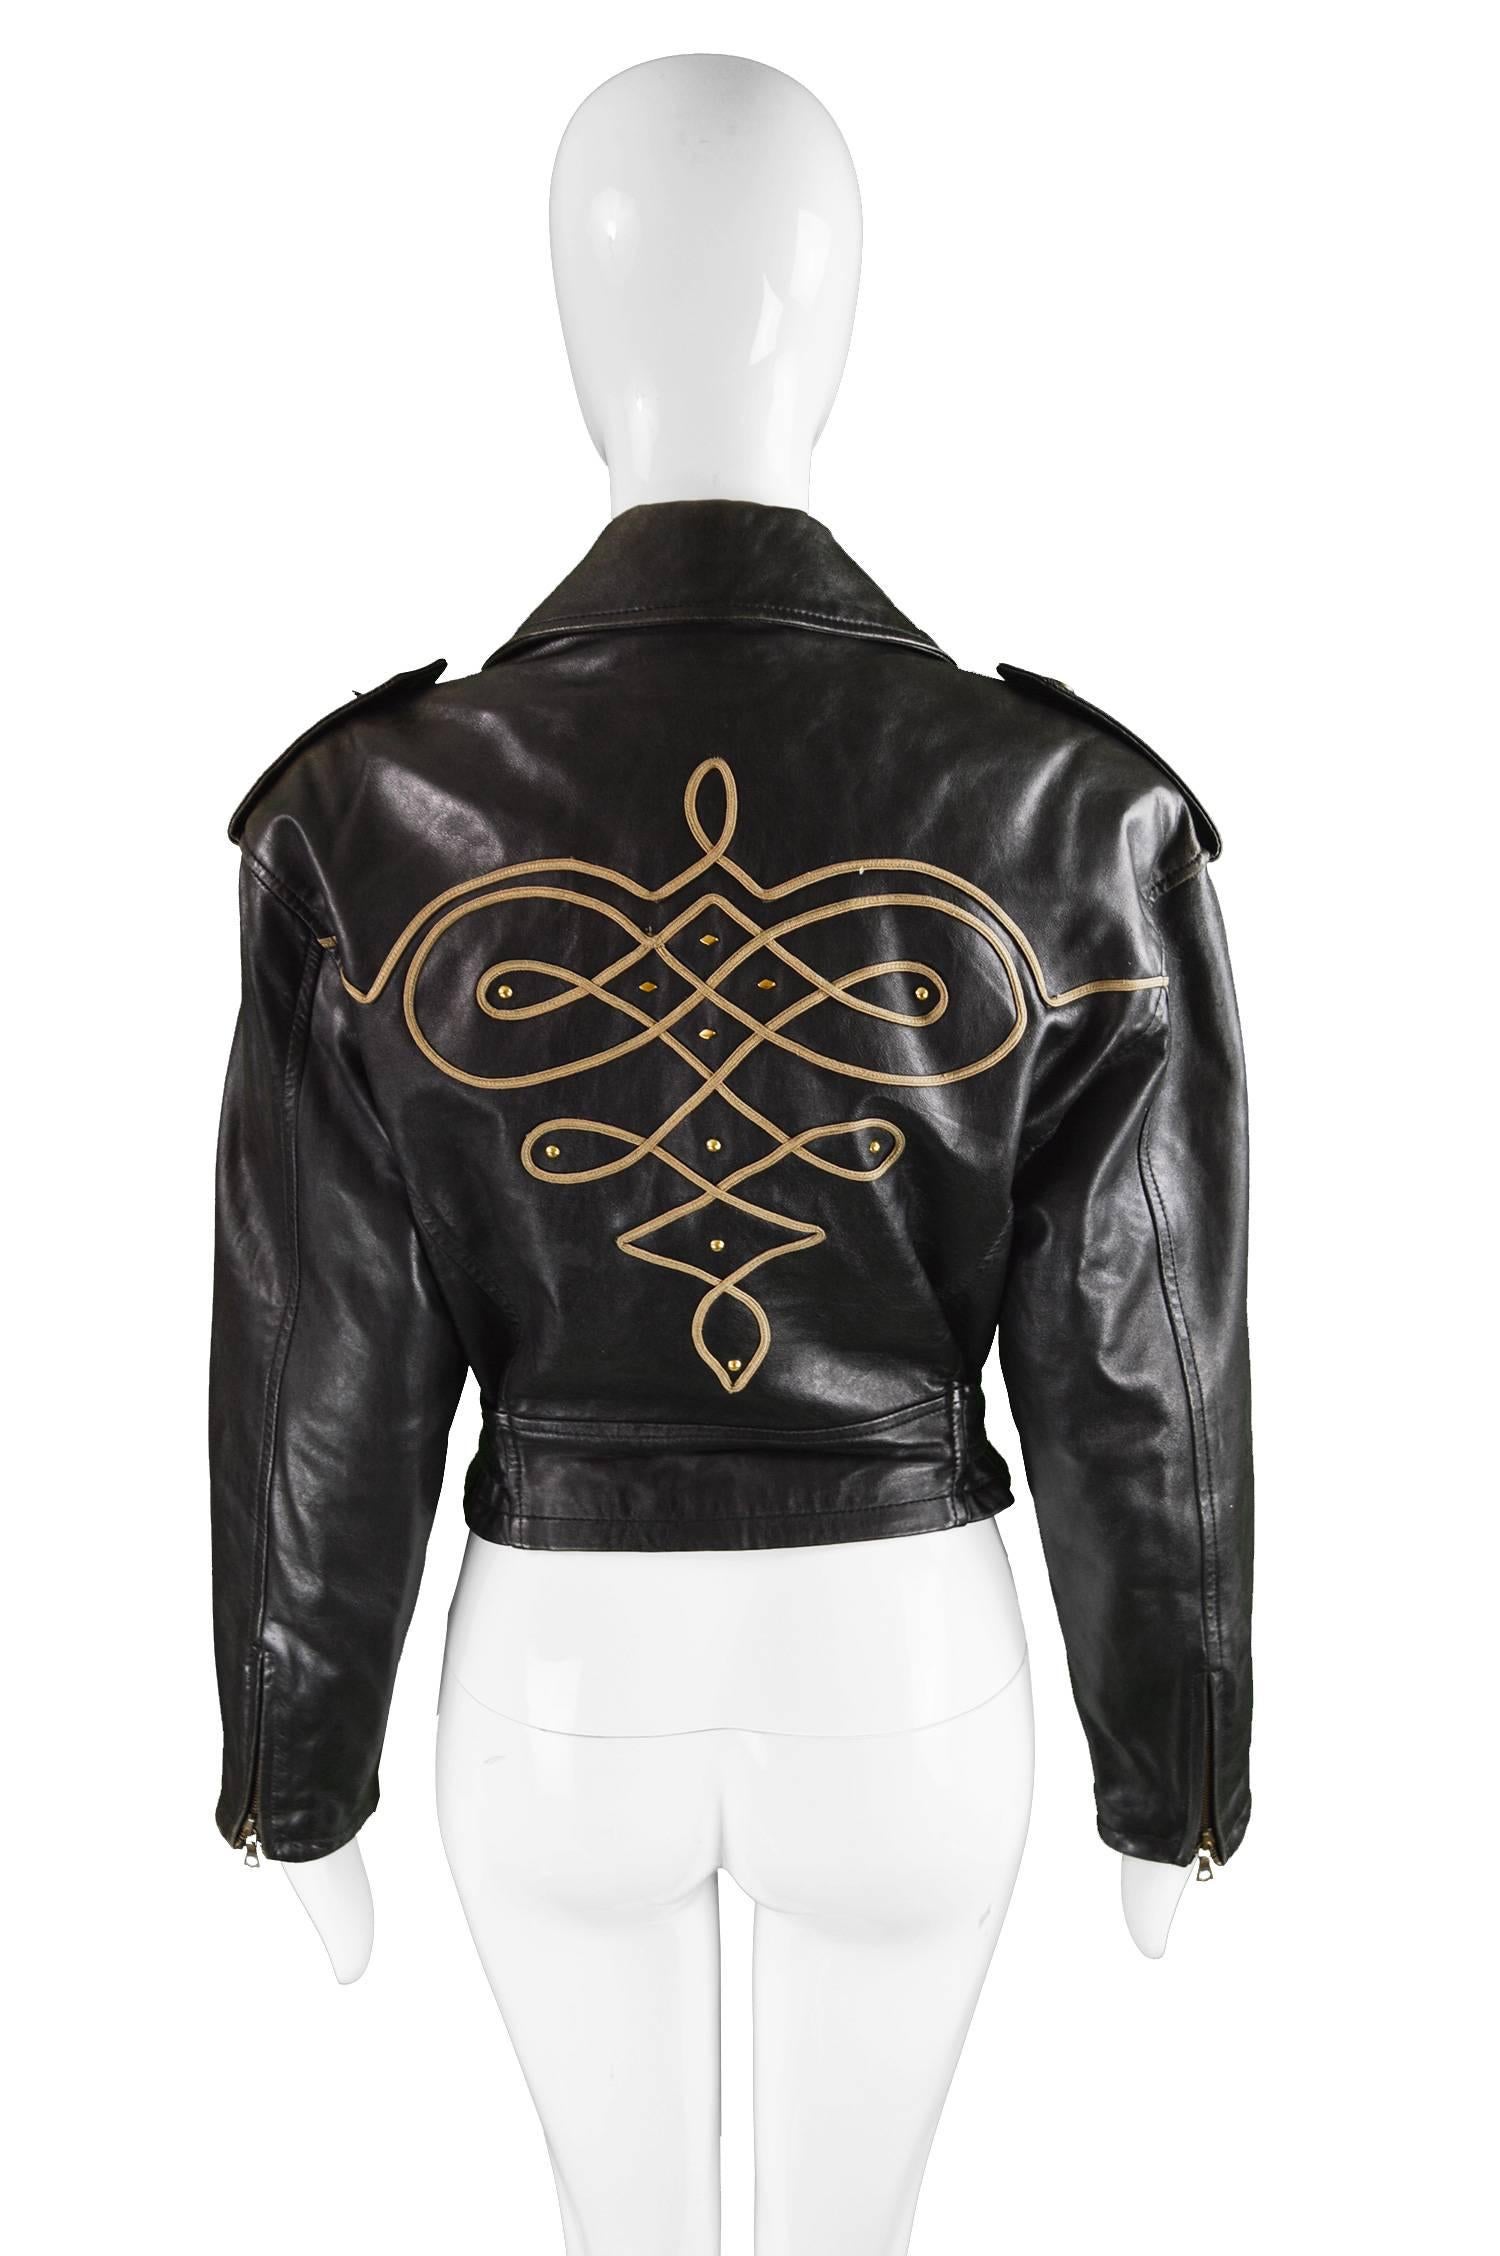 Byblos Women's Black Appliquéd Italian Leather Biker Jacket, A/W 1992 1